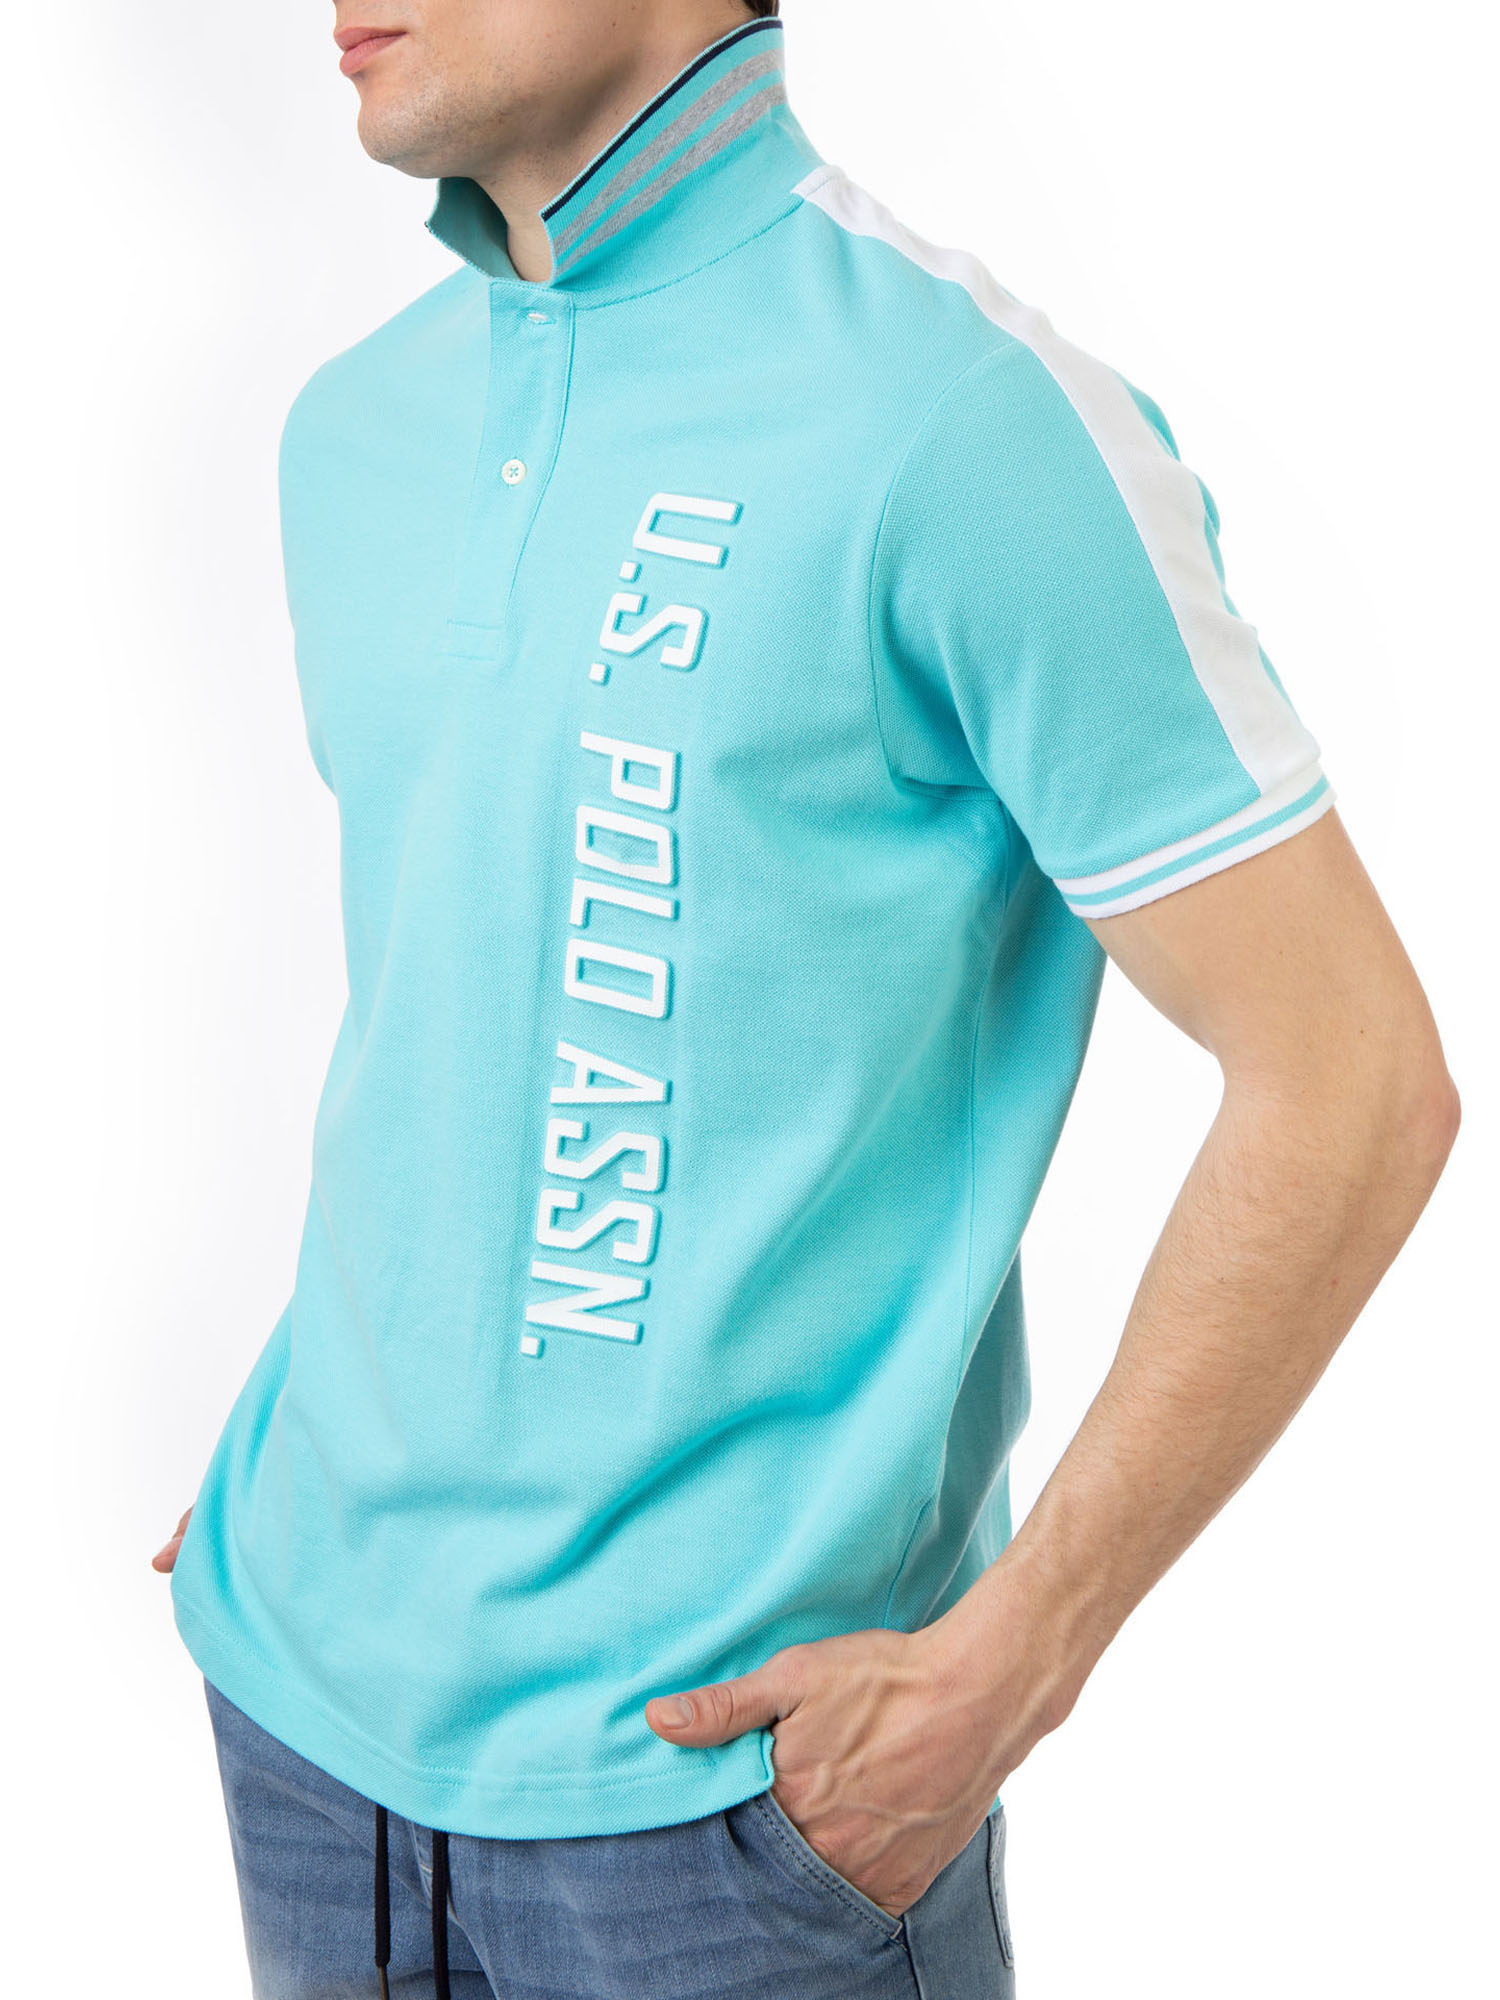 U.S. Polo Assn. Men's Embossed Logo Pique Polo Shirt - image 2 of 6